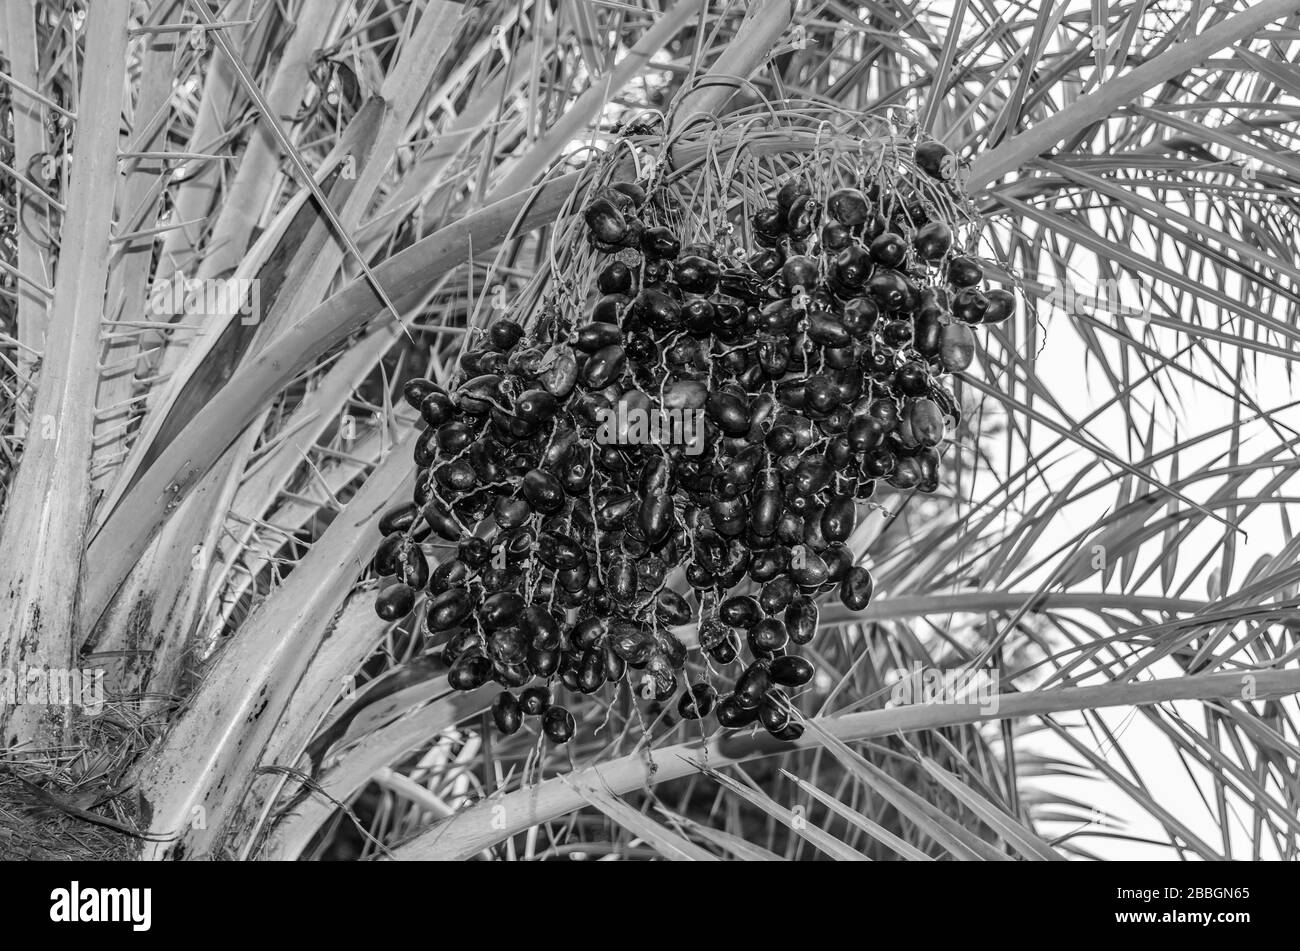 Détail d'un palmier à dattes avec des fruits déchirés, image en noir et blanc Banque D'Images